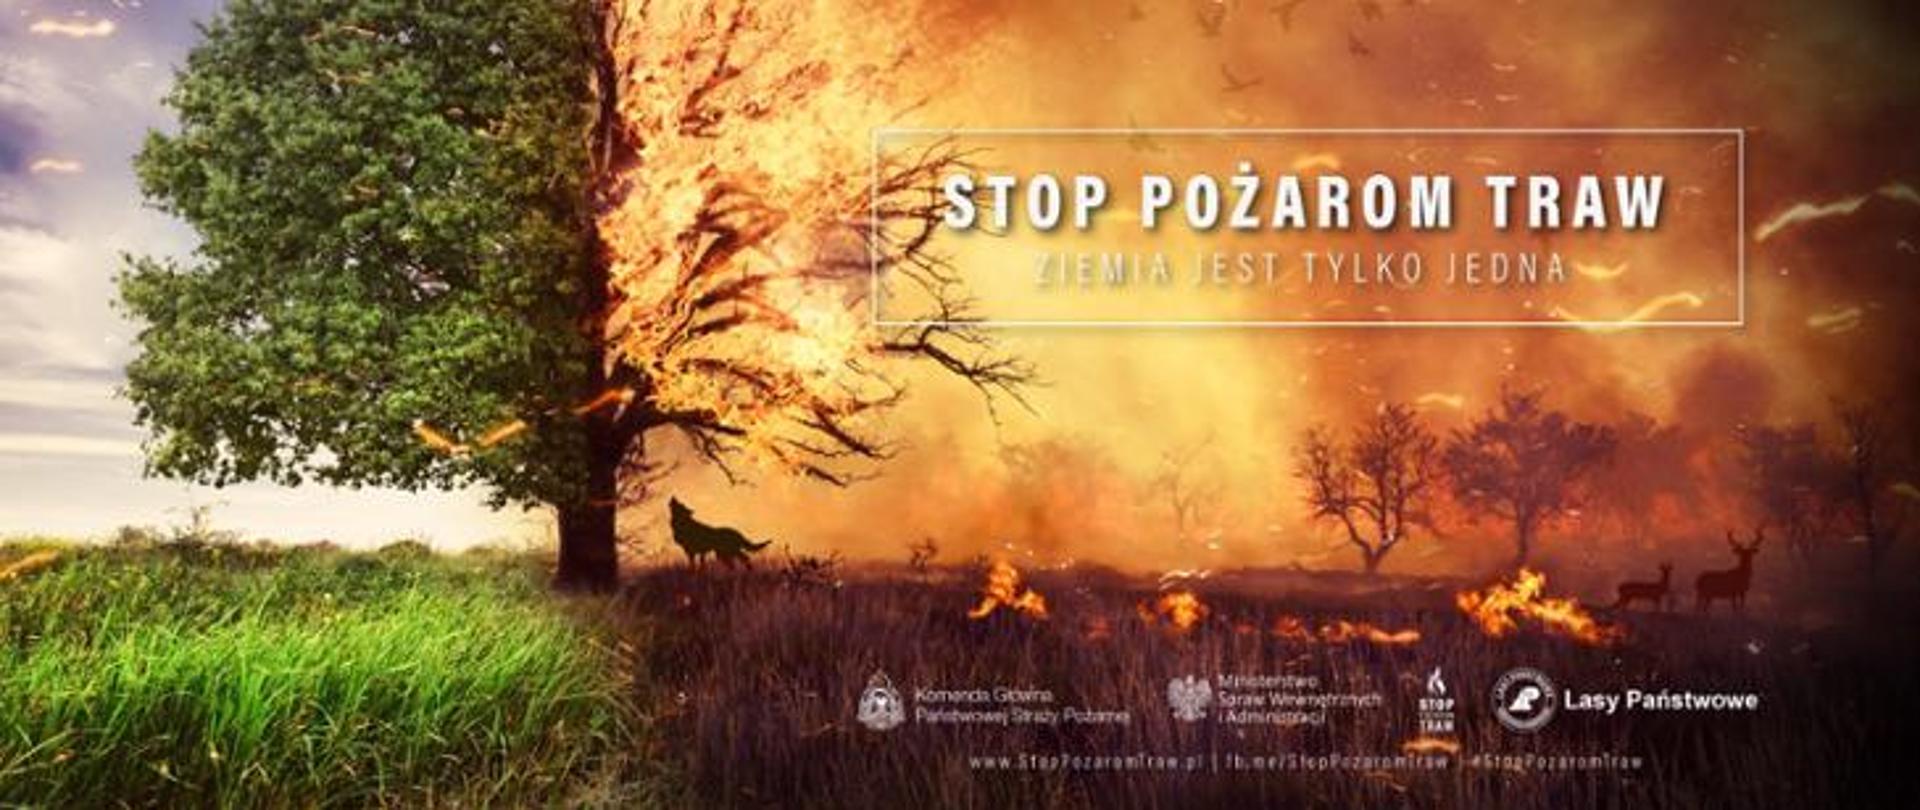 Logo kampanii stop pożarom traw, plakat palącej się trawy w oddali zwierzęta